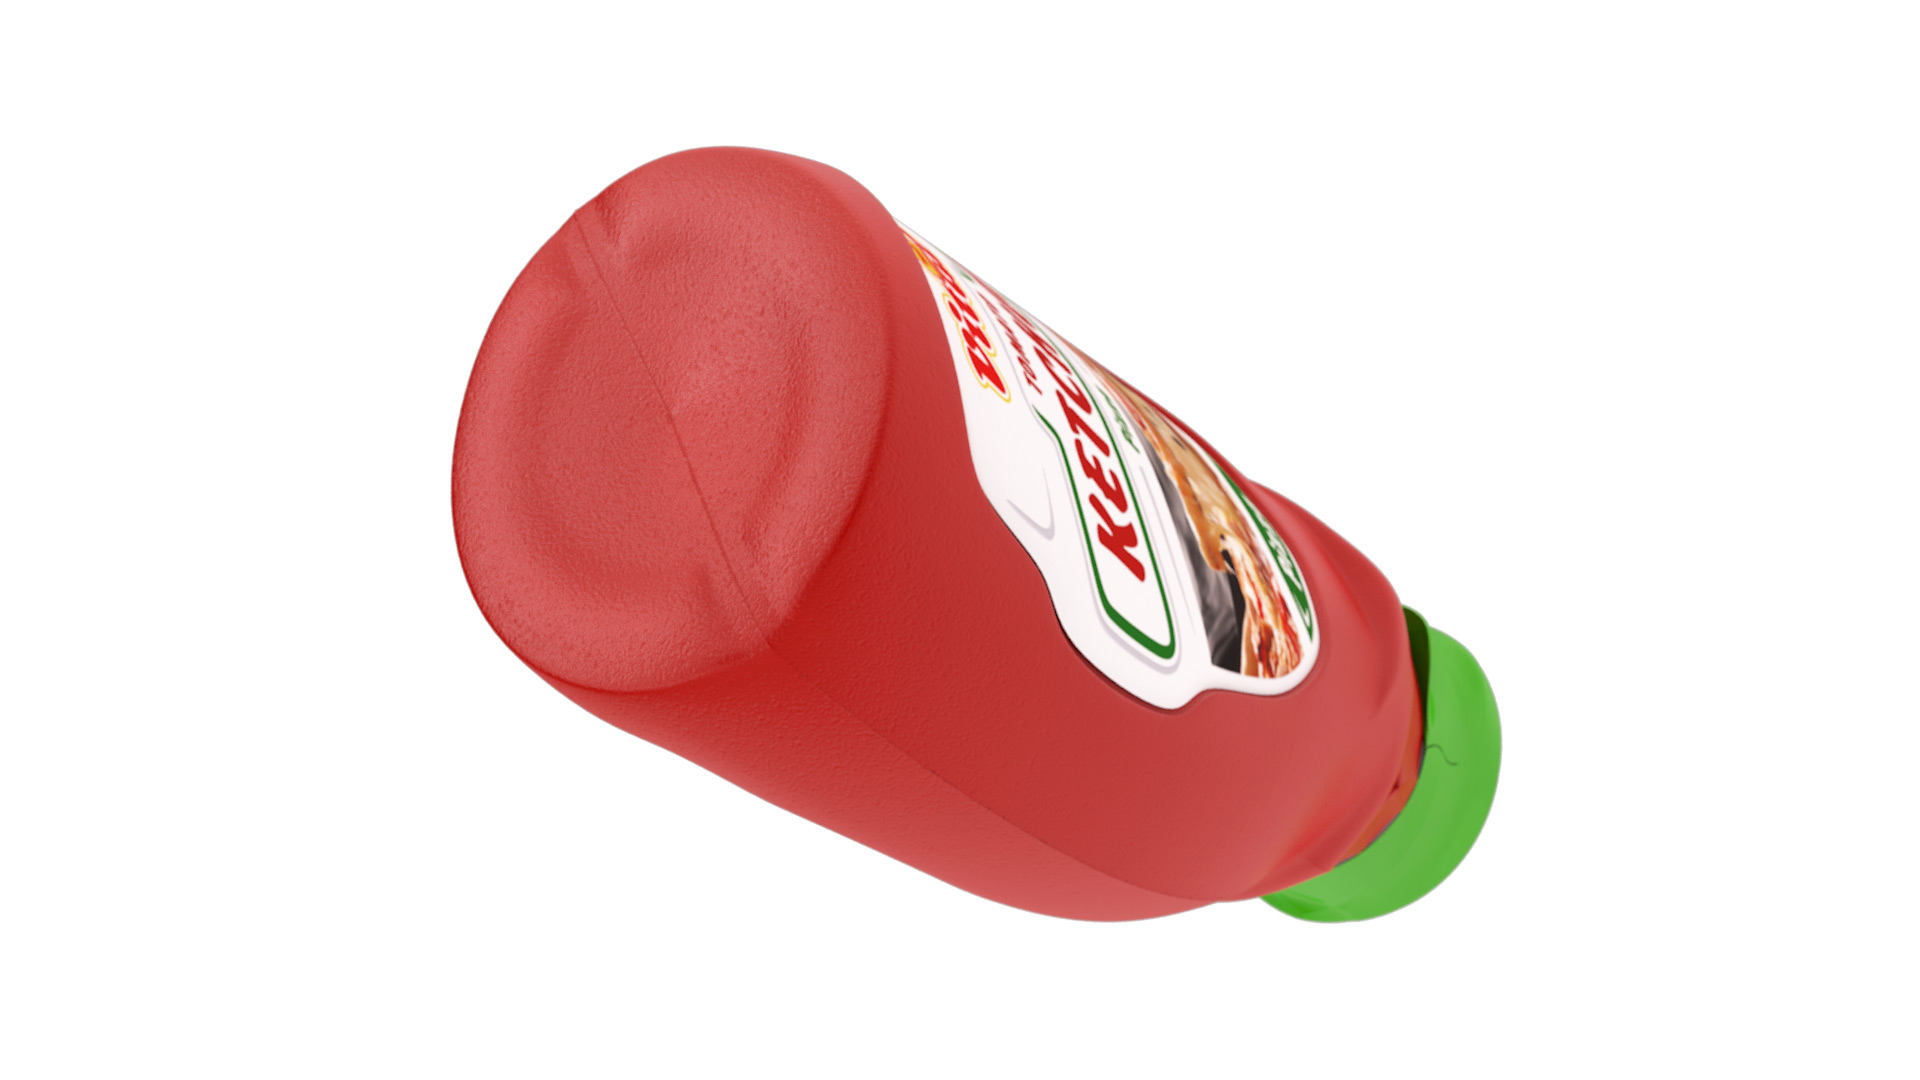 Vital tomato ketchup packaging design - plastic bottle bottom